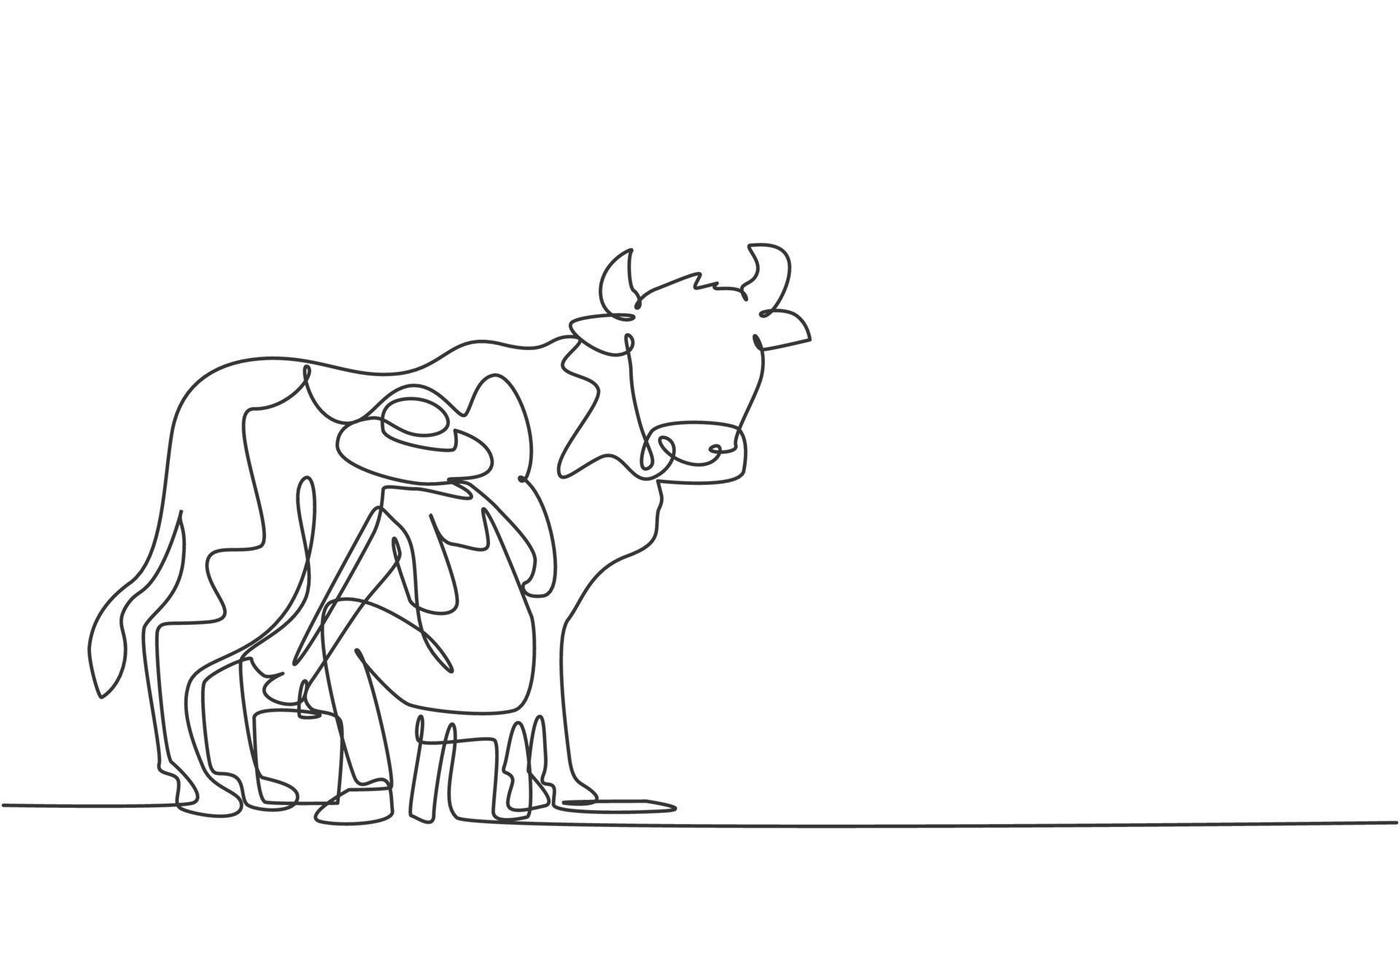 desenho de linha única contínua jovem fazendeiro ordenha uma vaca da maneira tradicional. um conceito de minimalismo de atividade de colheita bem-sucedido. dinâmica de uma linha desenhar ilustração em vetor design gráfico.